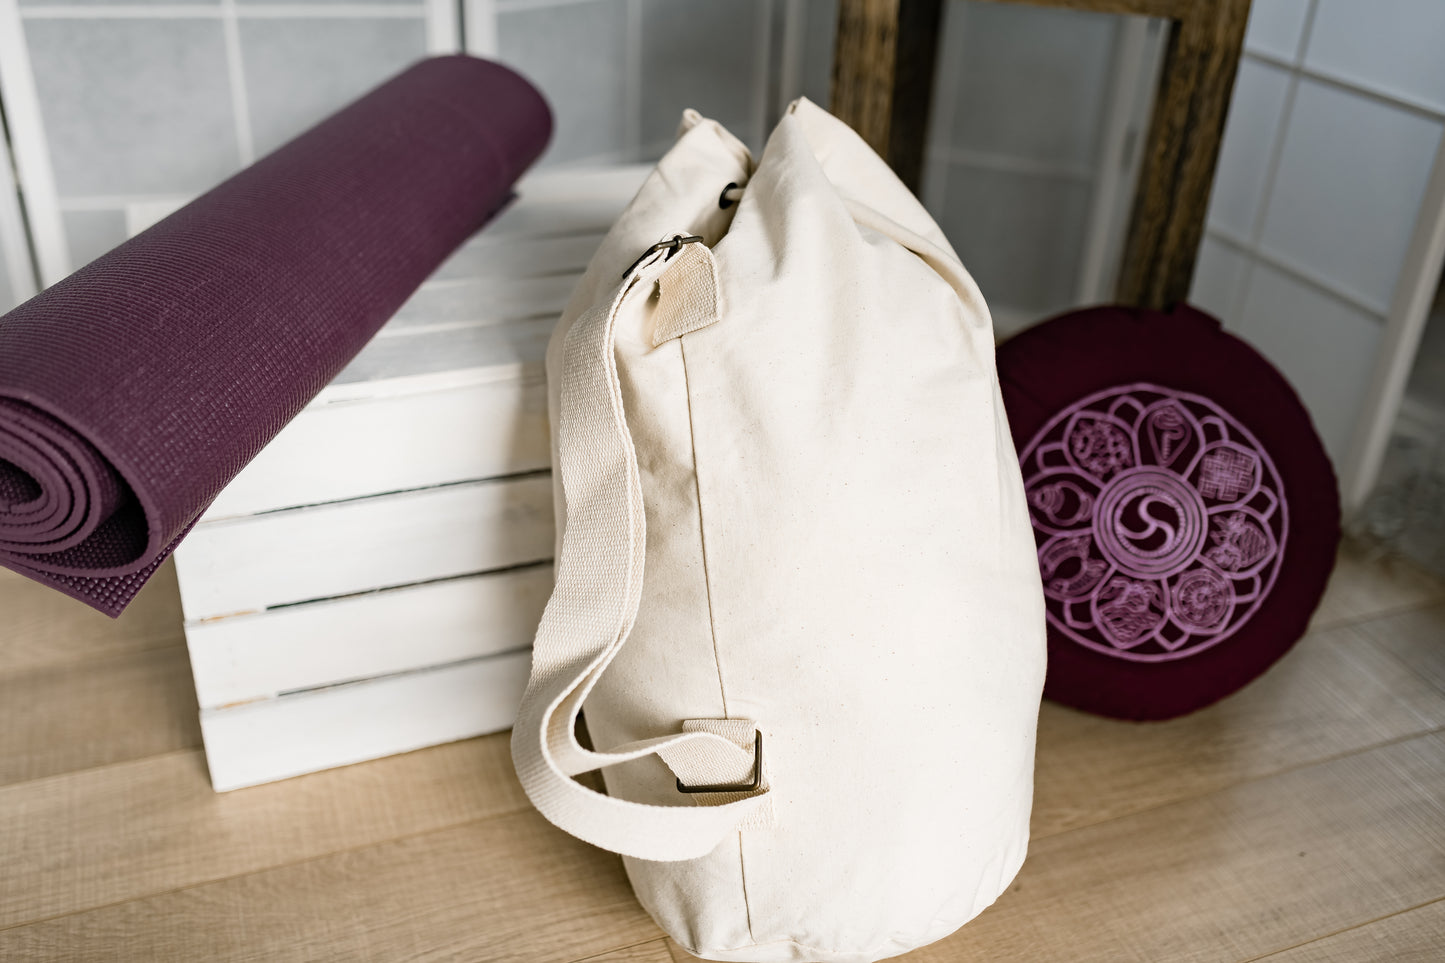 Sea Bag "Take Time To Make Your Soul Happy” aus Baumwolle - Perfekt für den Alltag, Yoga, Meditation - Spirituelle Geschenkidee zu Weihnachten & Geburtstag